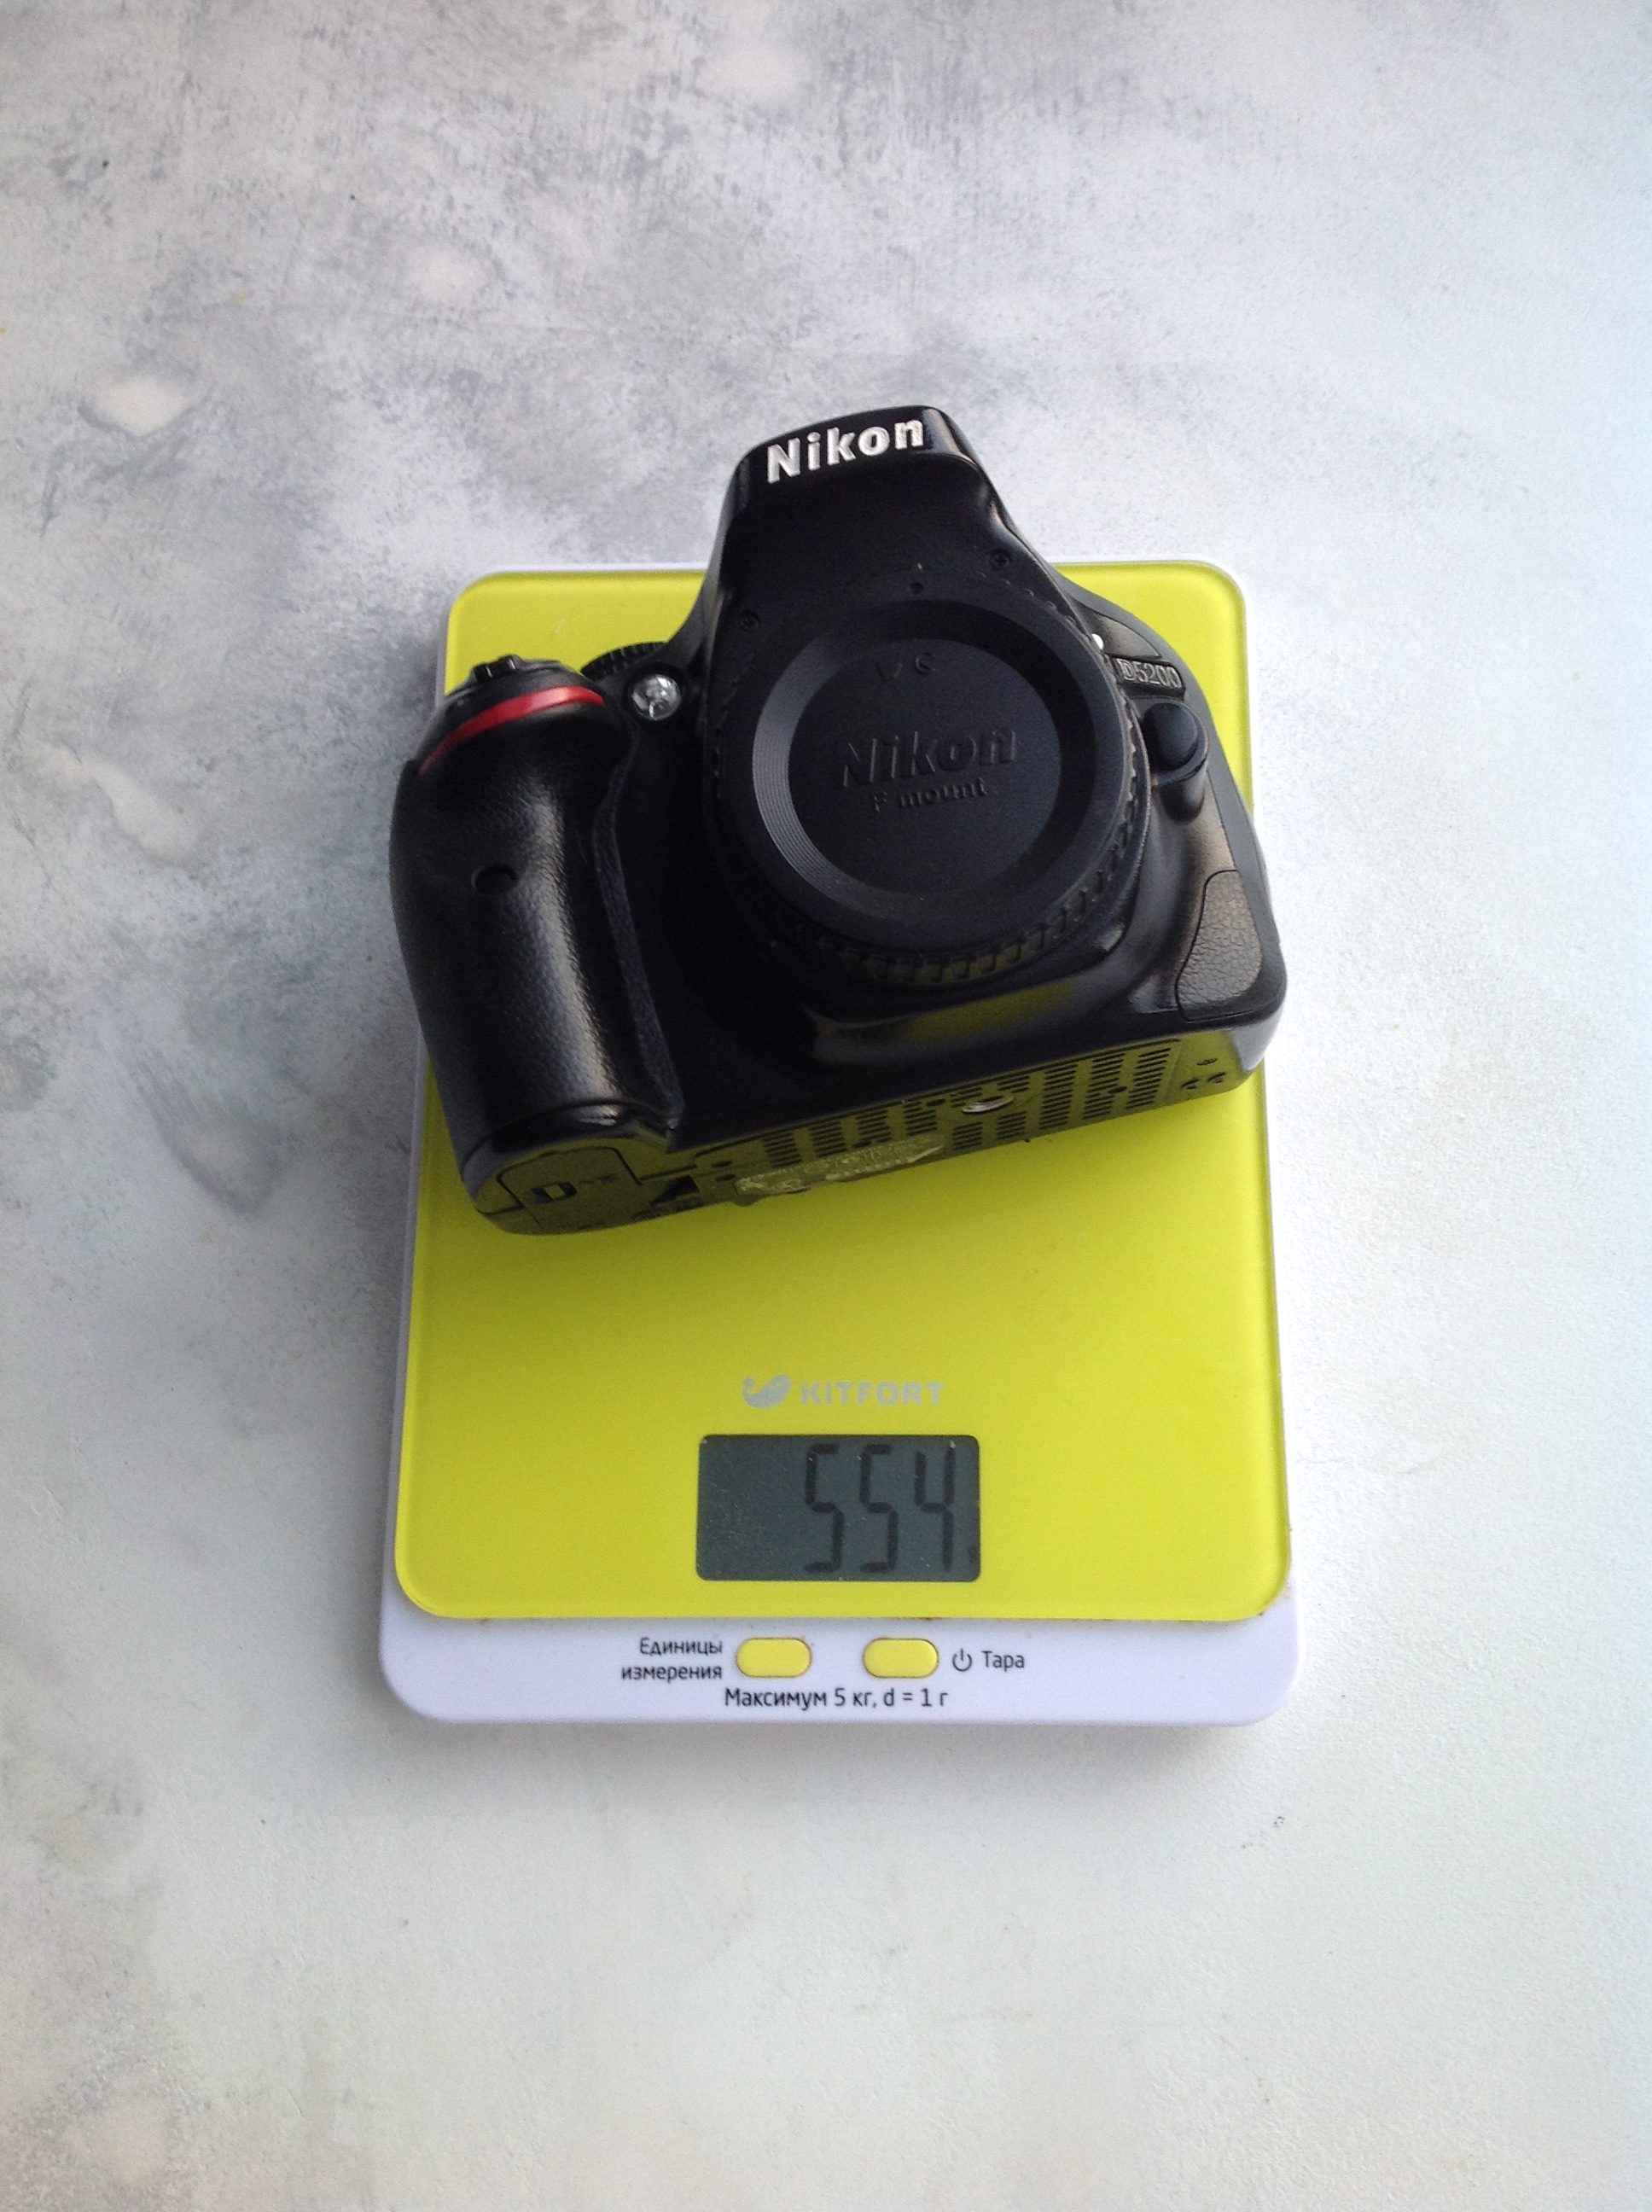 尼康 D500 机身相机的重量